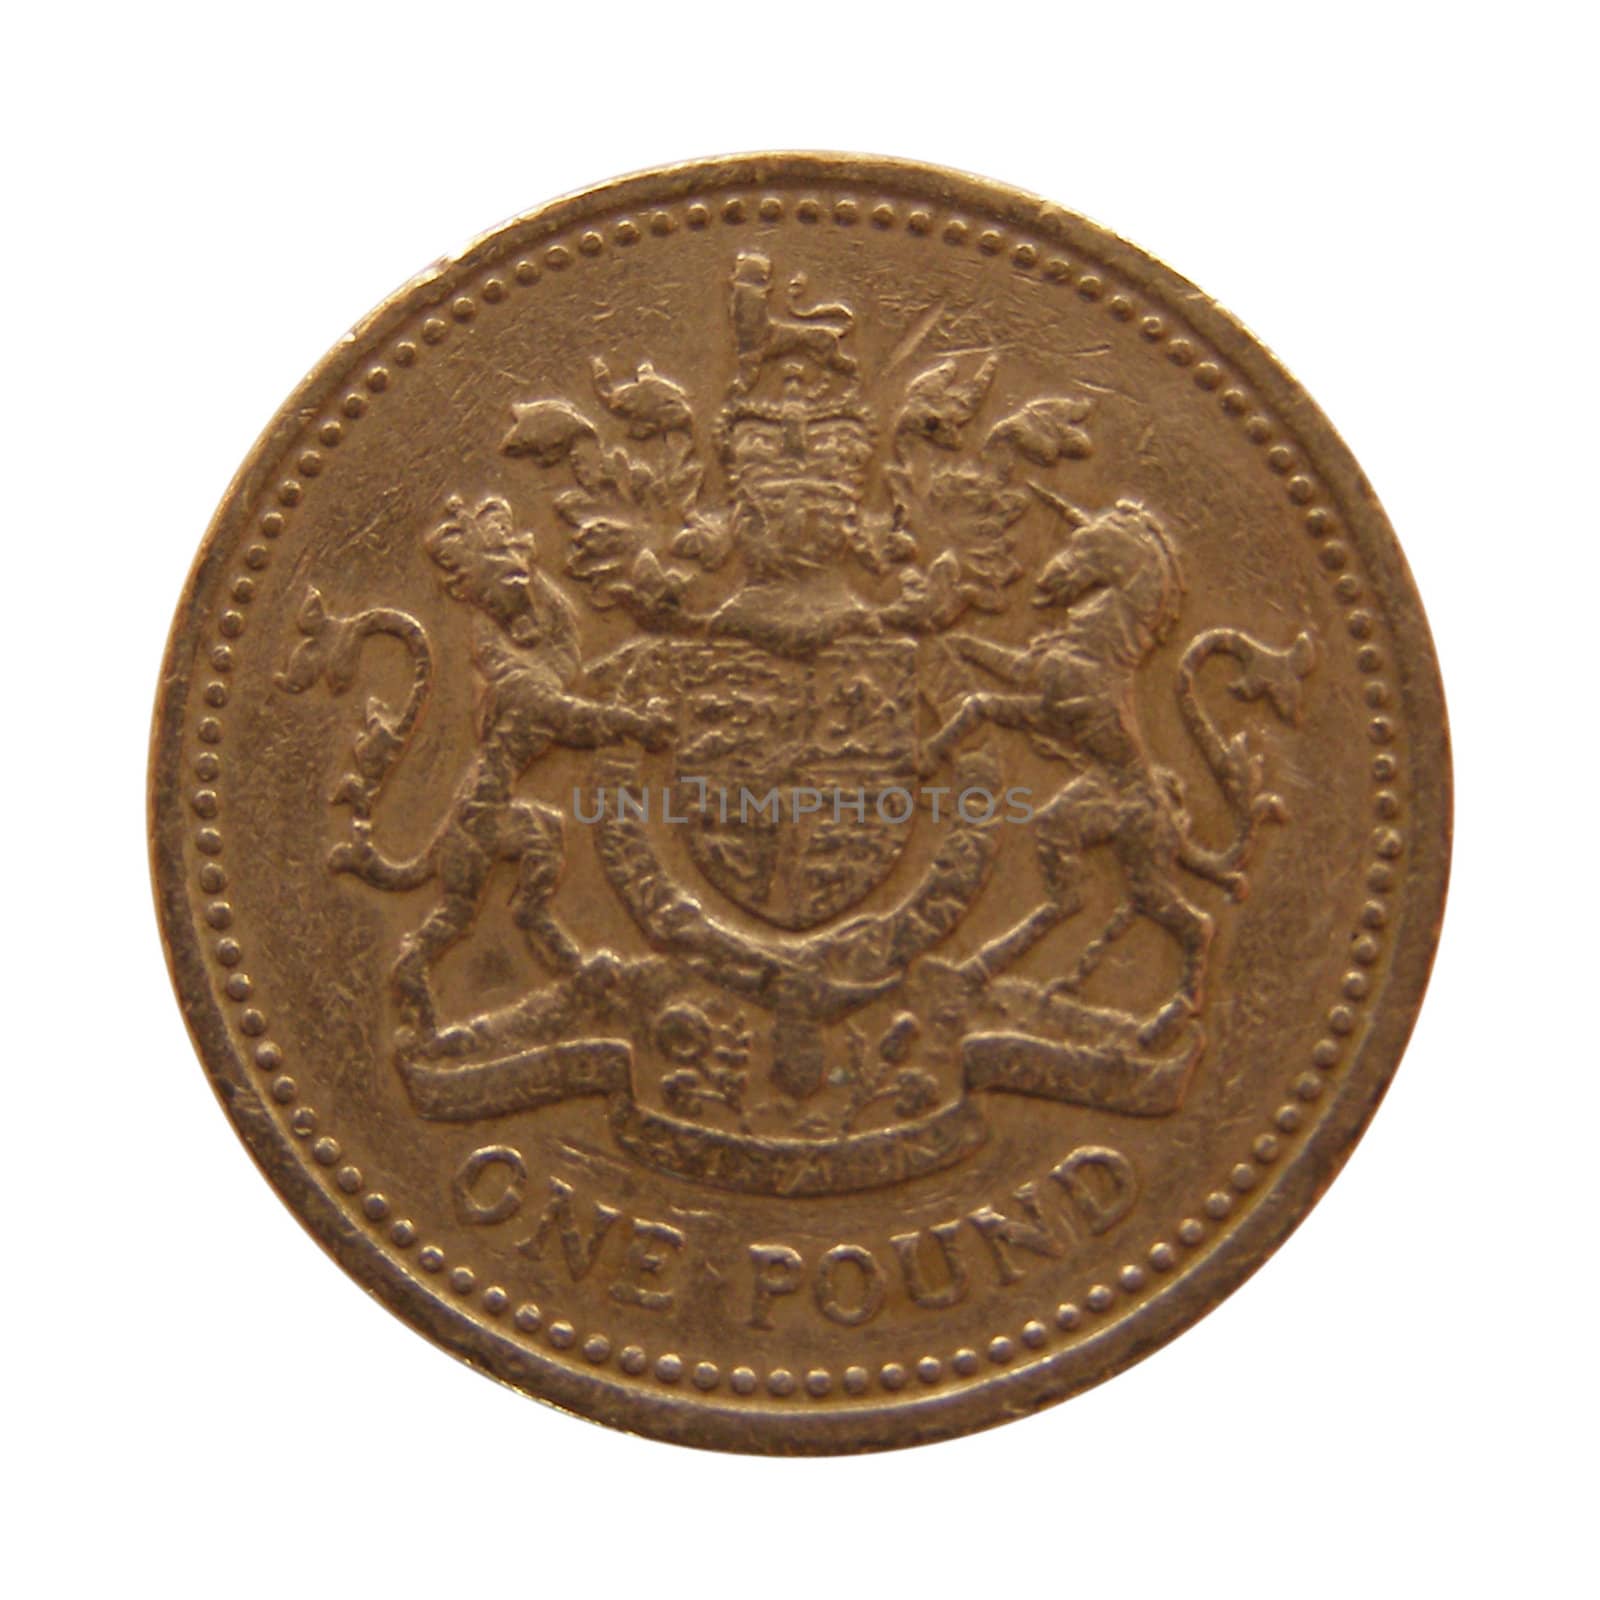 British Pound coins money